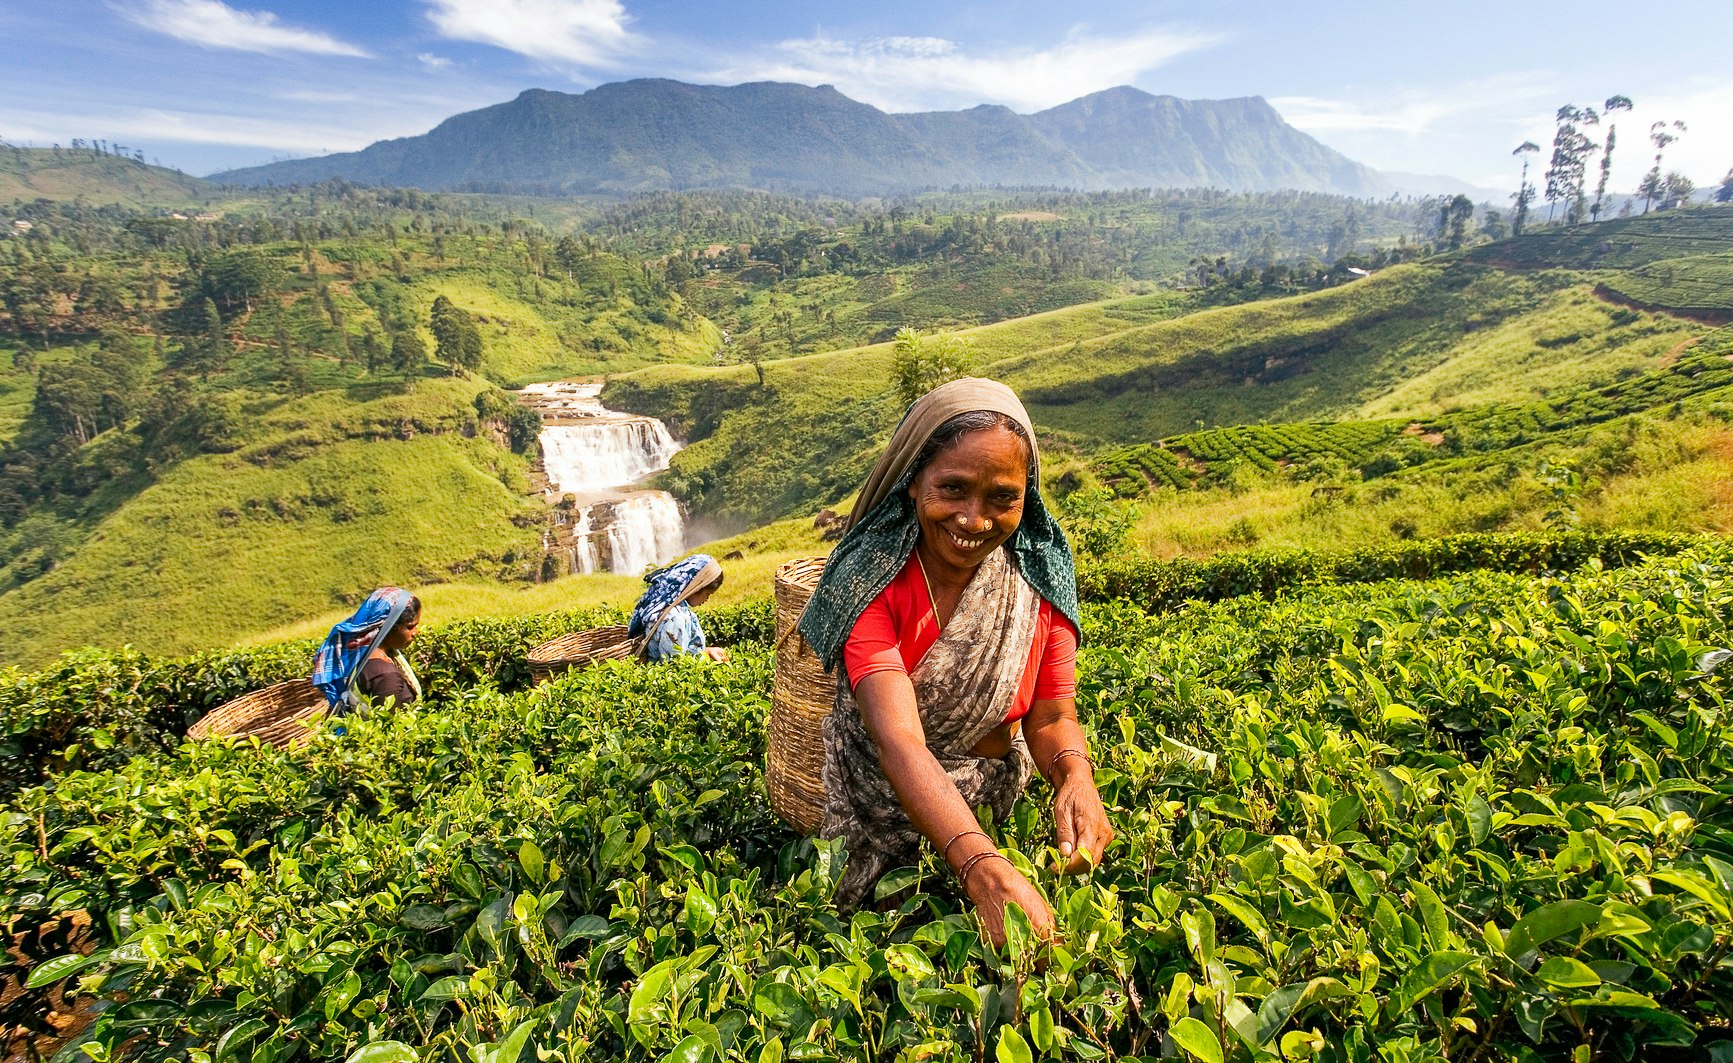 Workers pick tea in a field near Nuwara Eliya, Sri Lanka